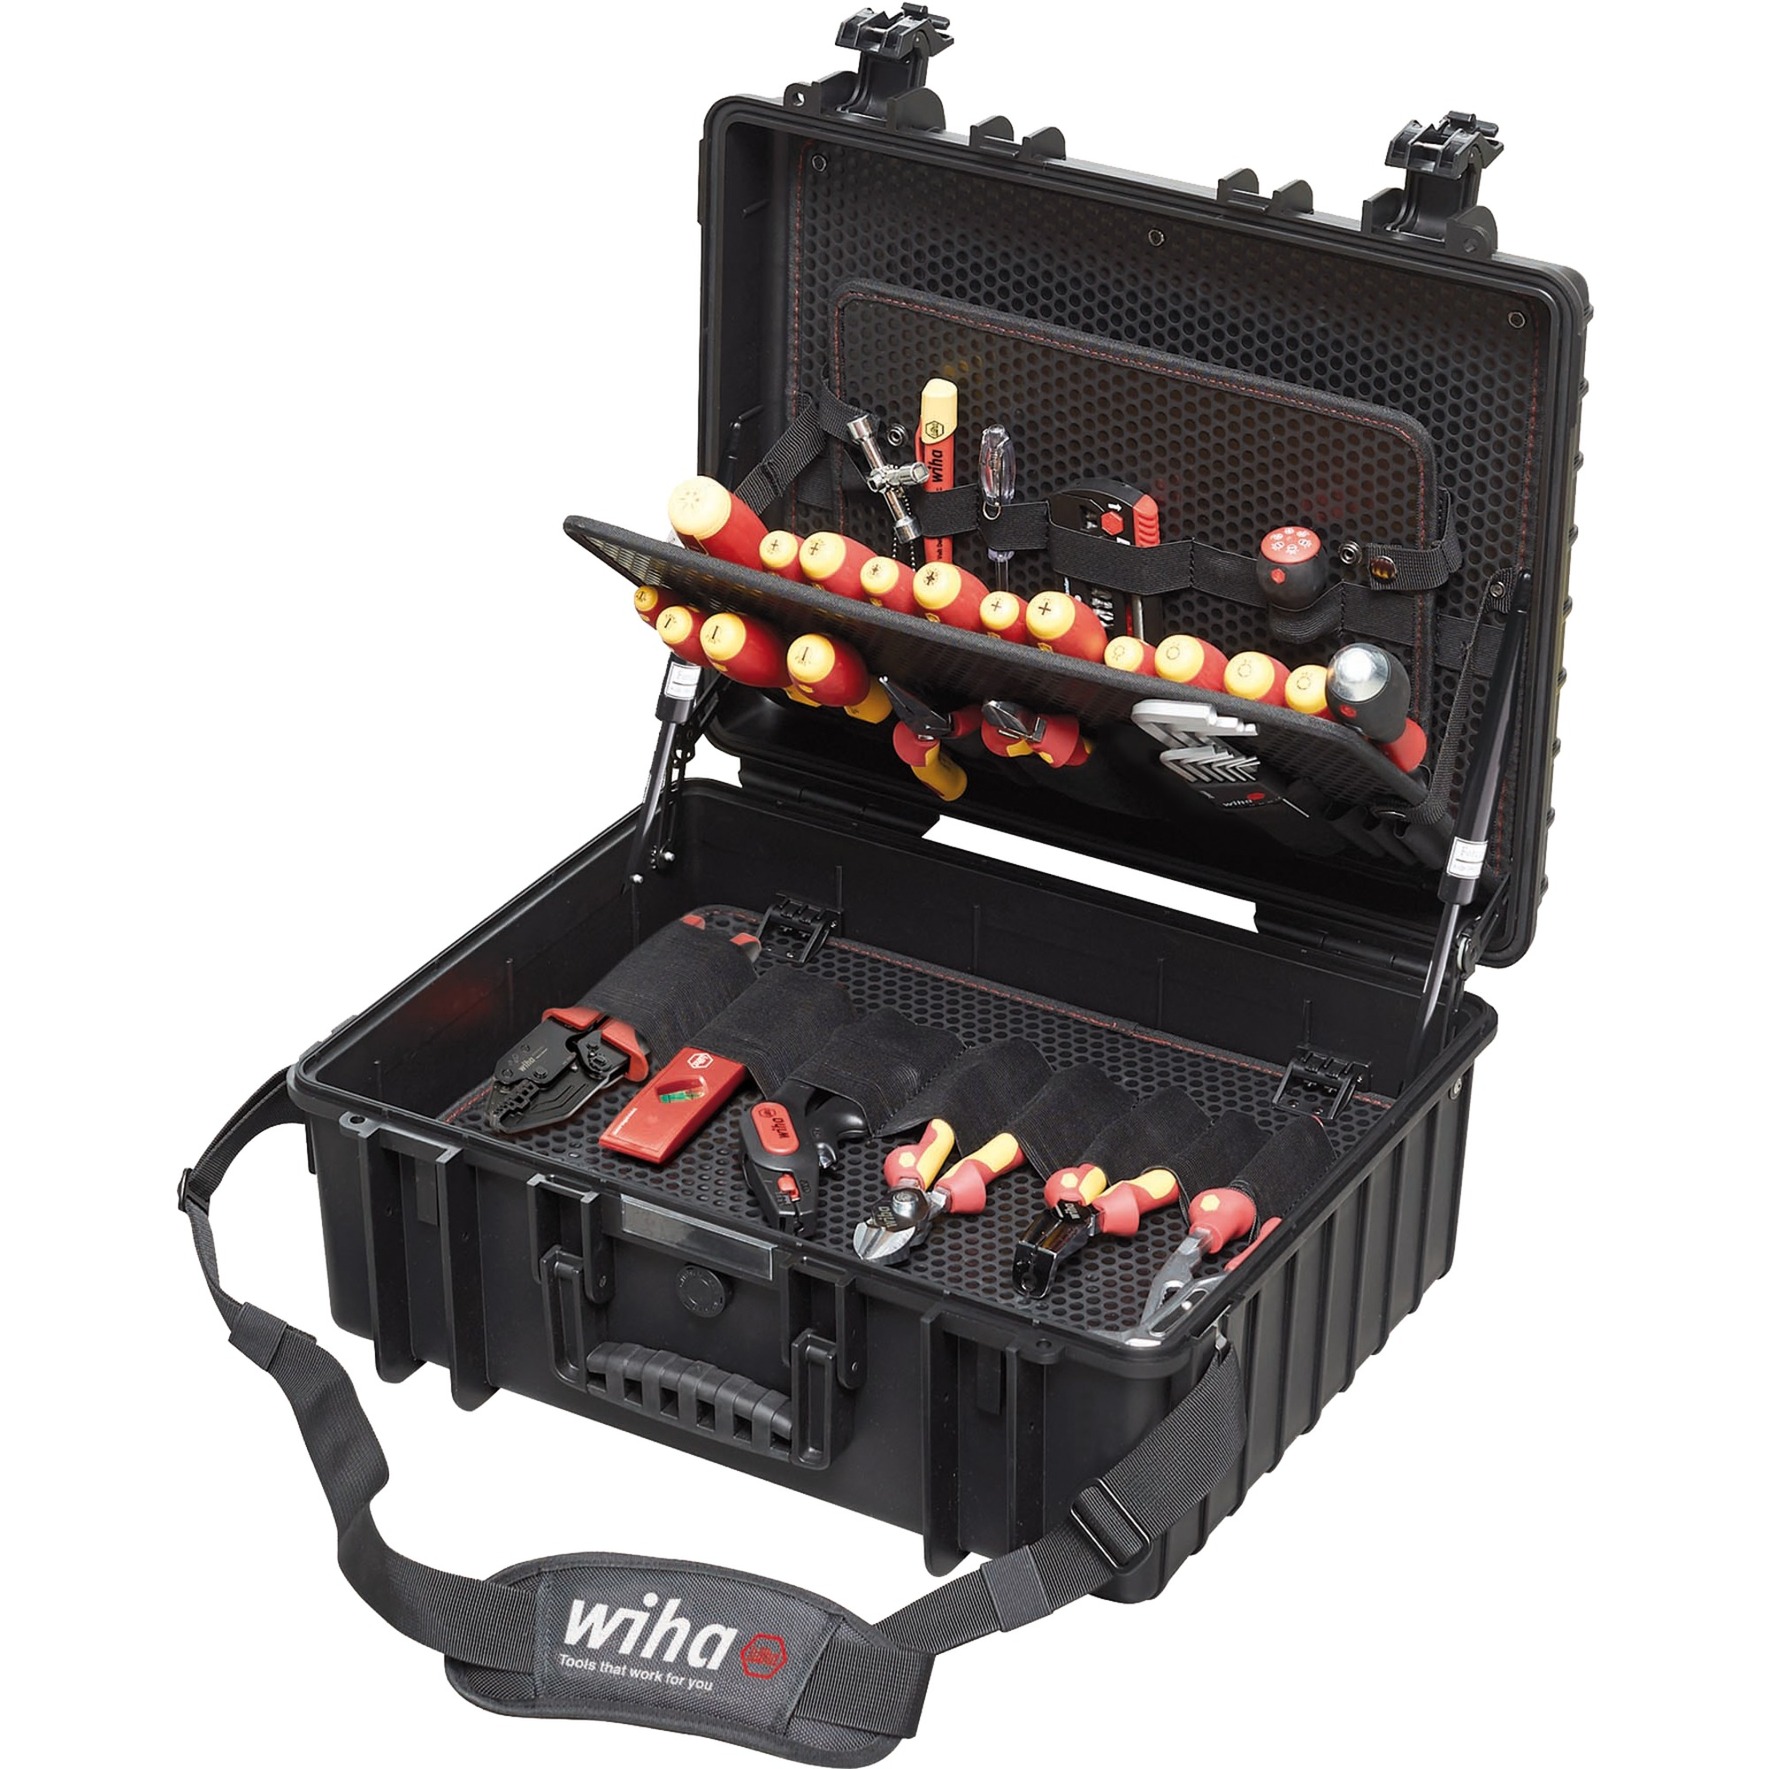 Image of Alternate - Werkzeug-Set Elektriker Competence XL online einkaufen bei Alternate